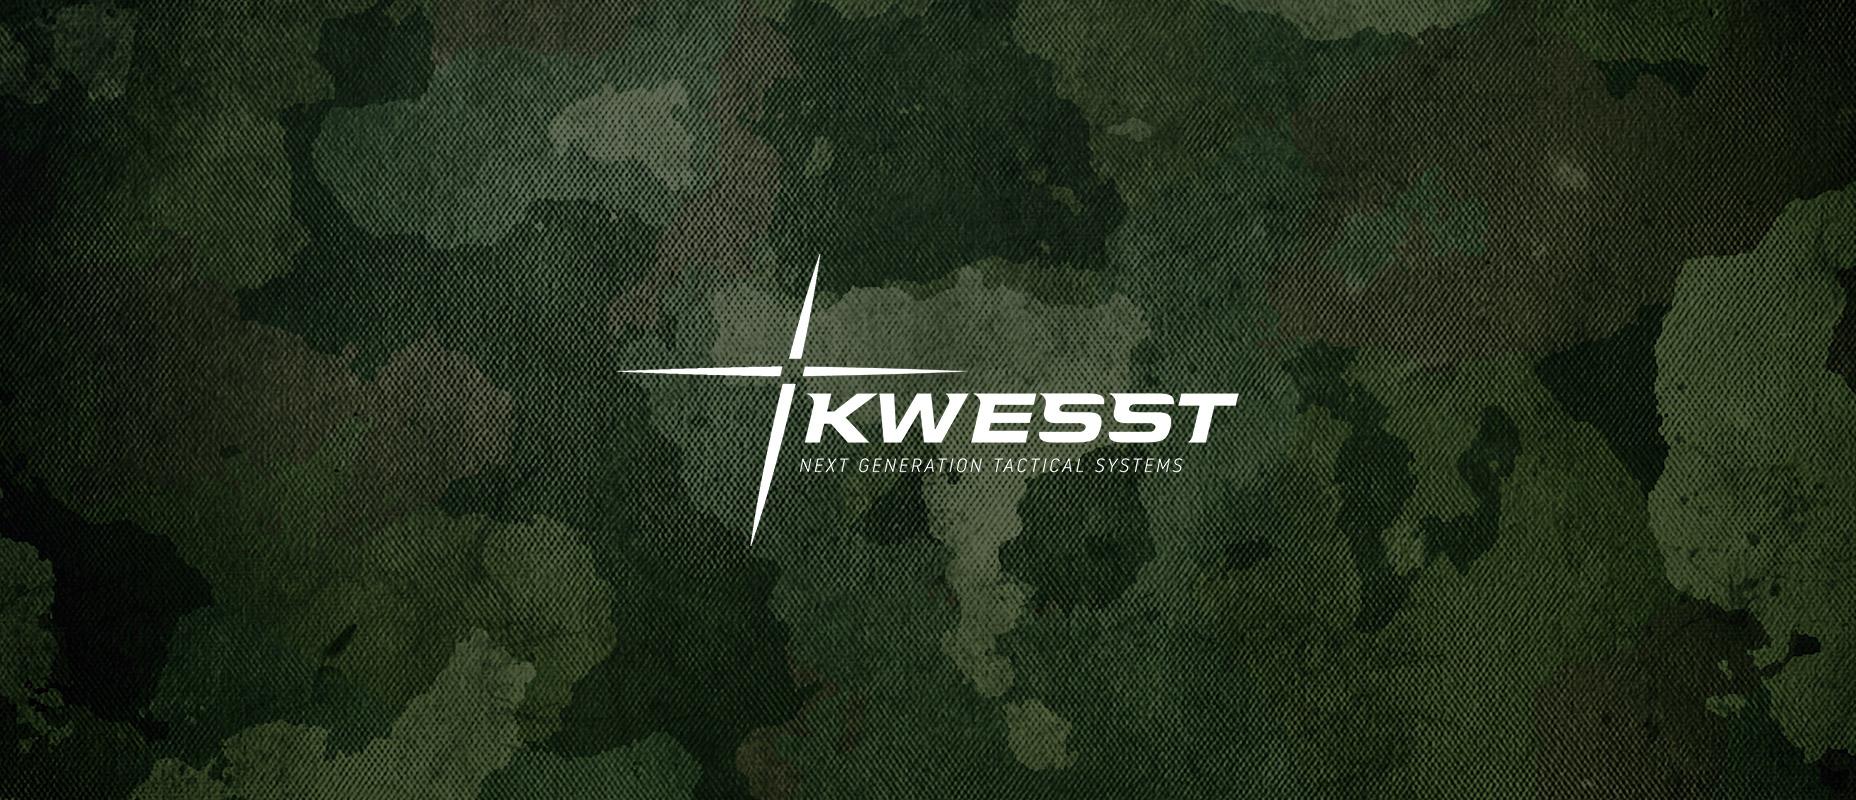 El fabricante de sistemas tácticos de próxima generación, KWESST Micro Systems Inc, ha confirmado su salida a bolsa